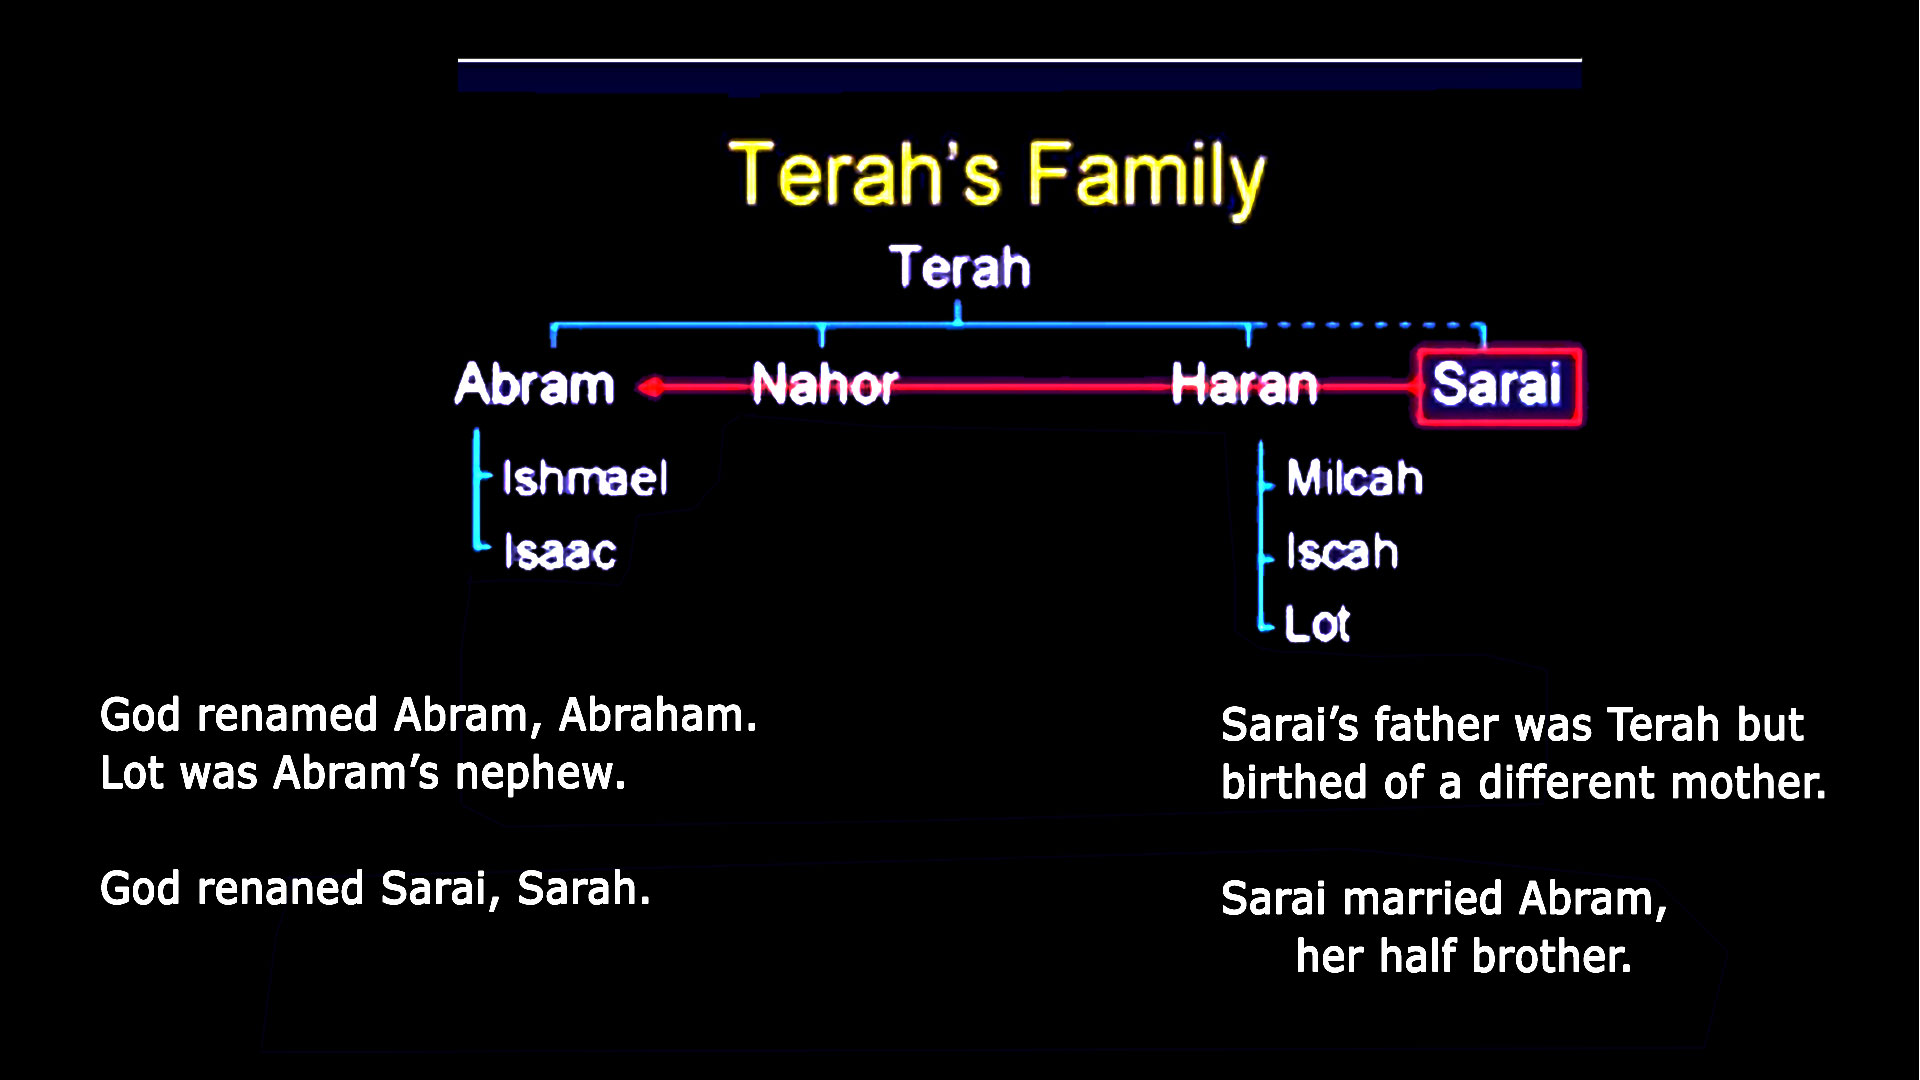 Terah's Family Tree